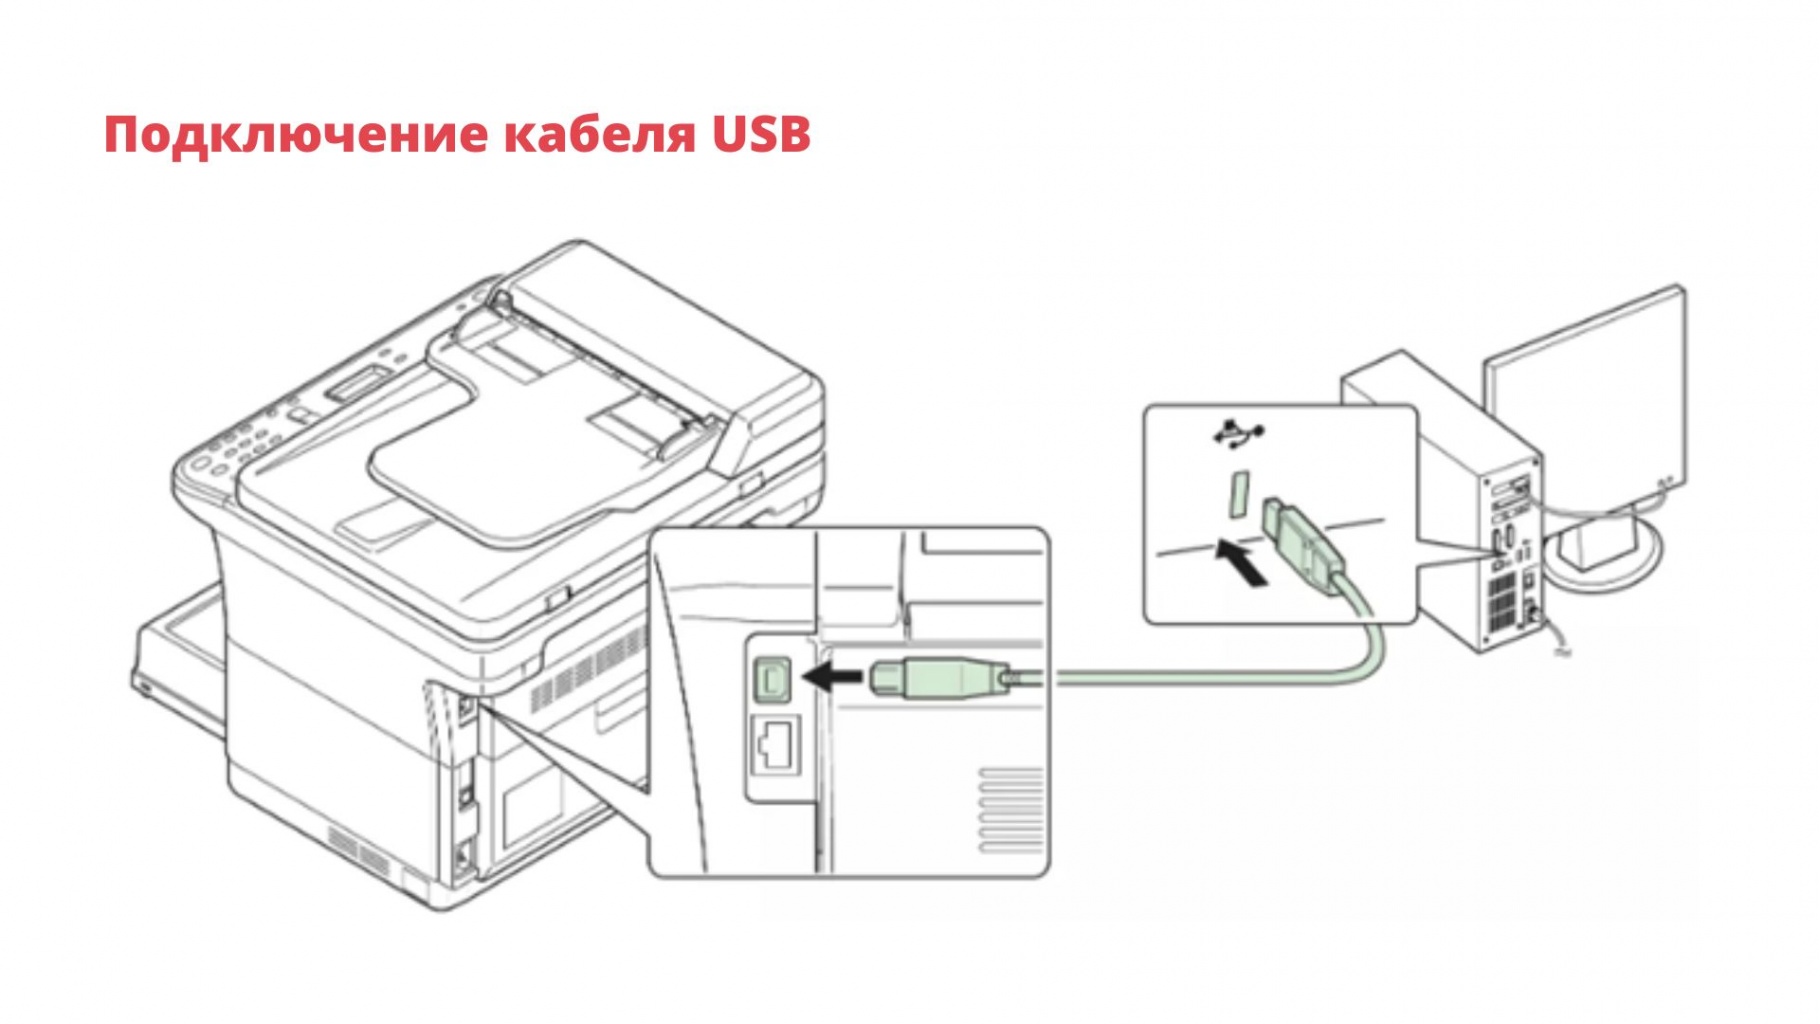 podkluchenie-kabelya-USB.jpg